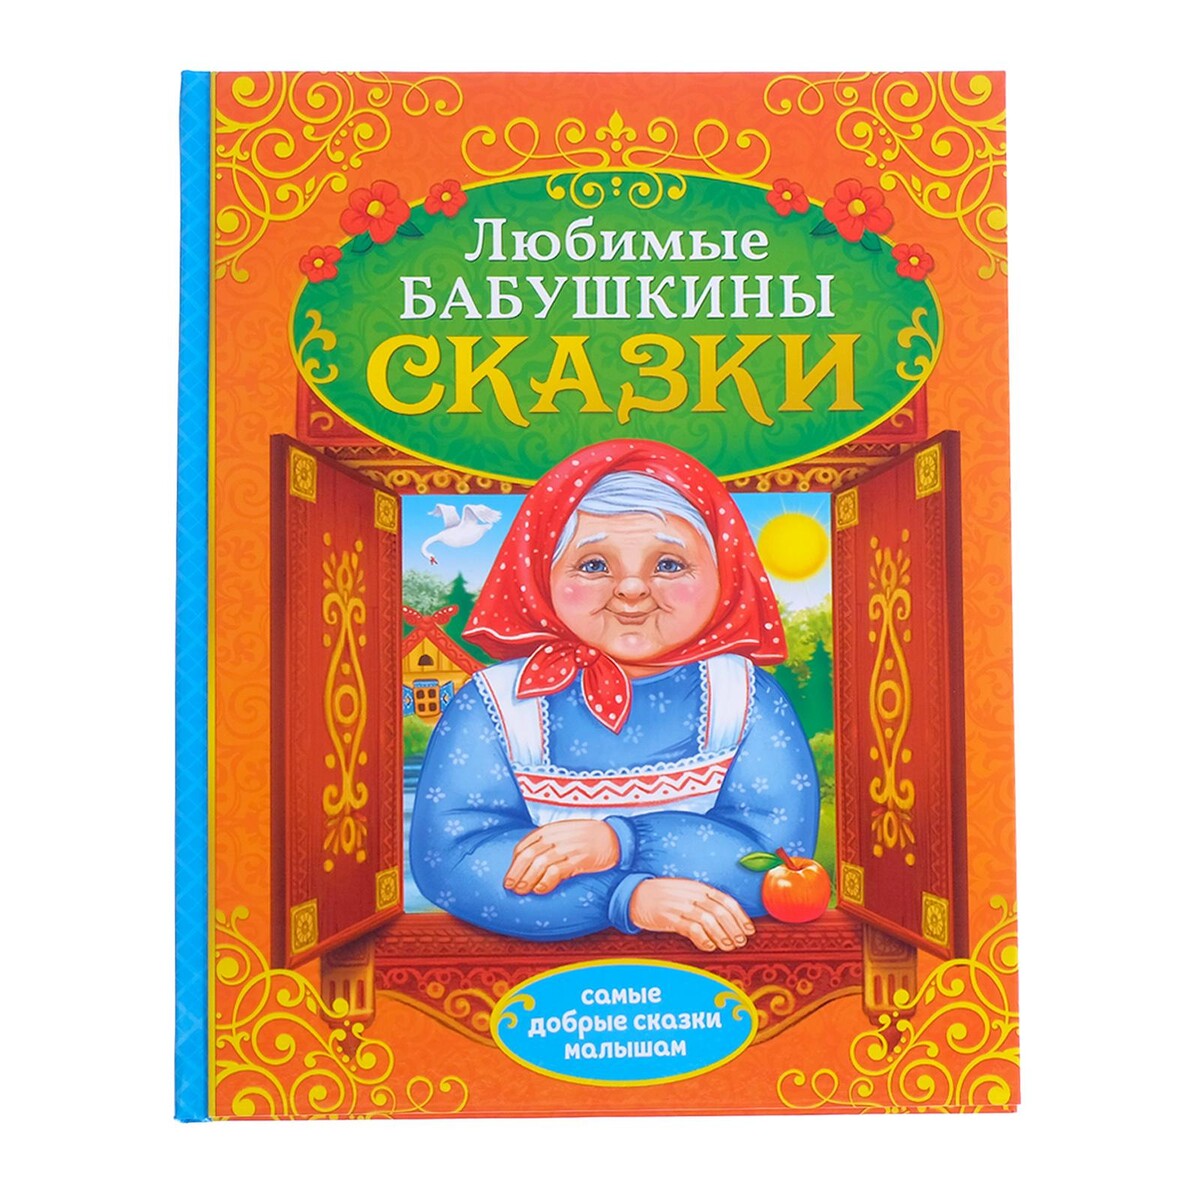 Книга в твердом переплете веселая книга героев русских сказок